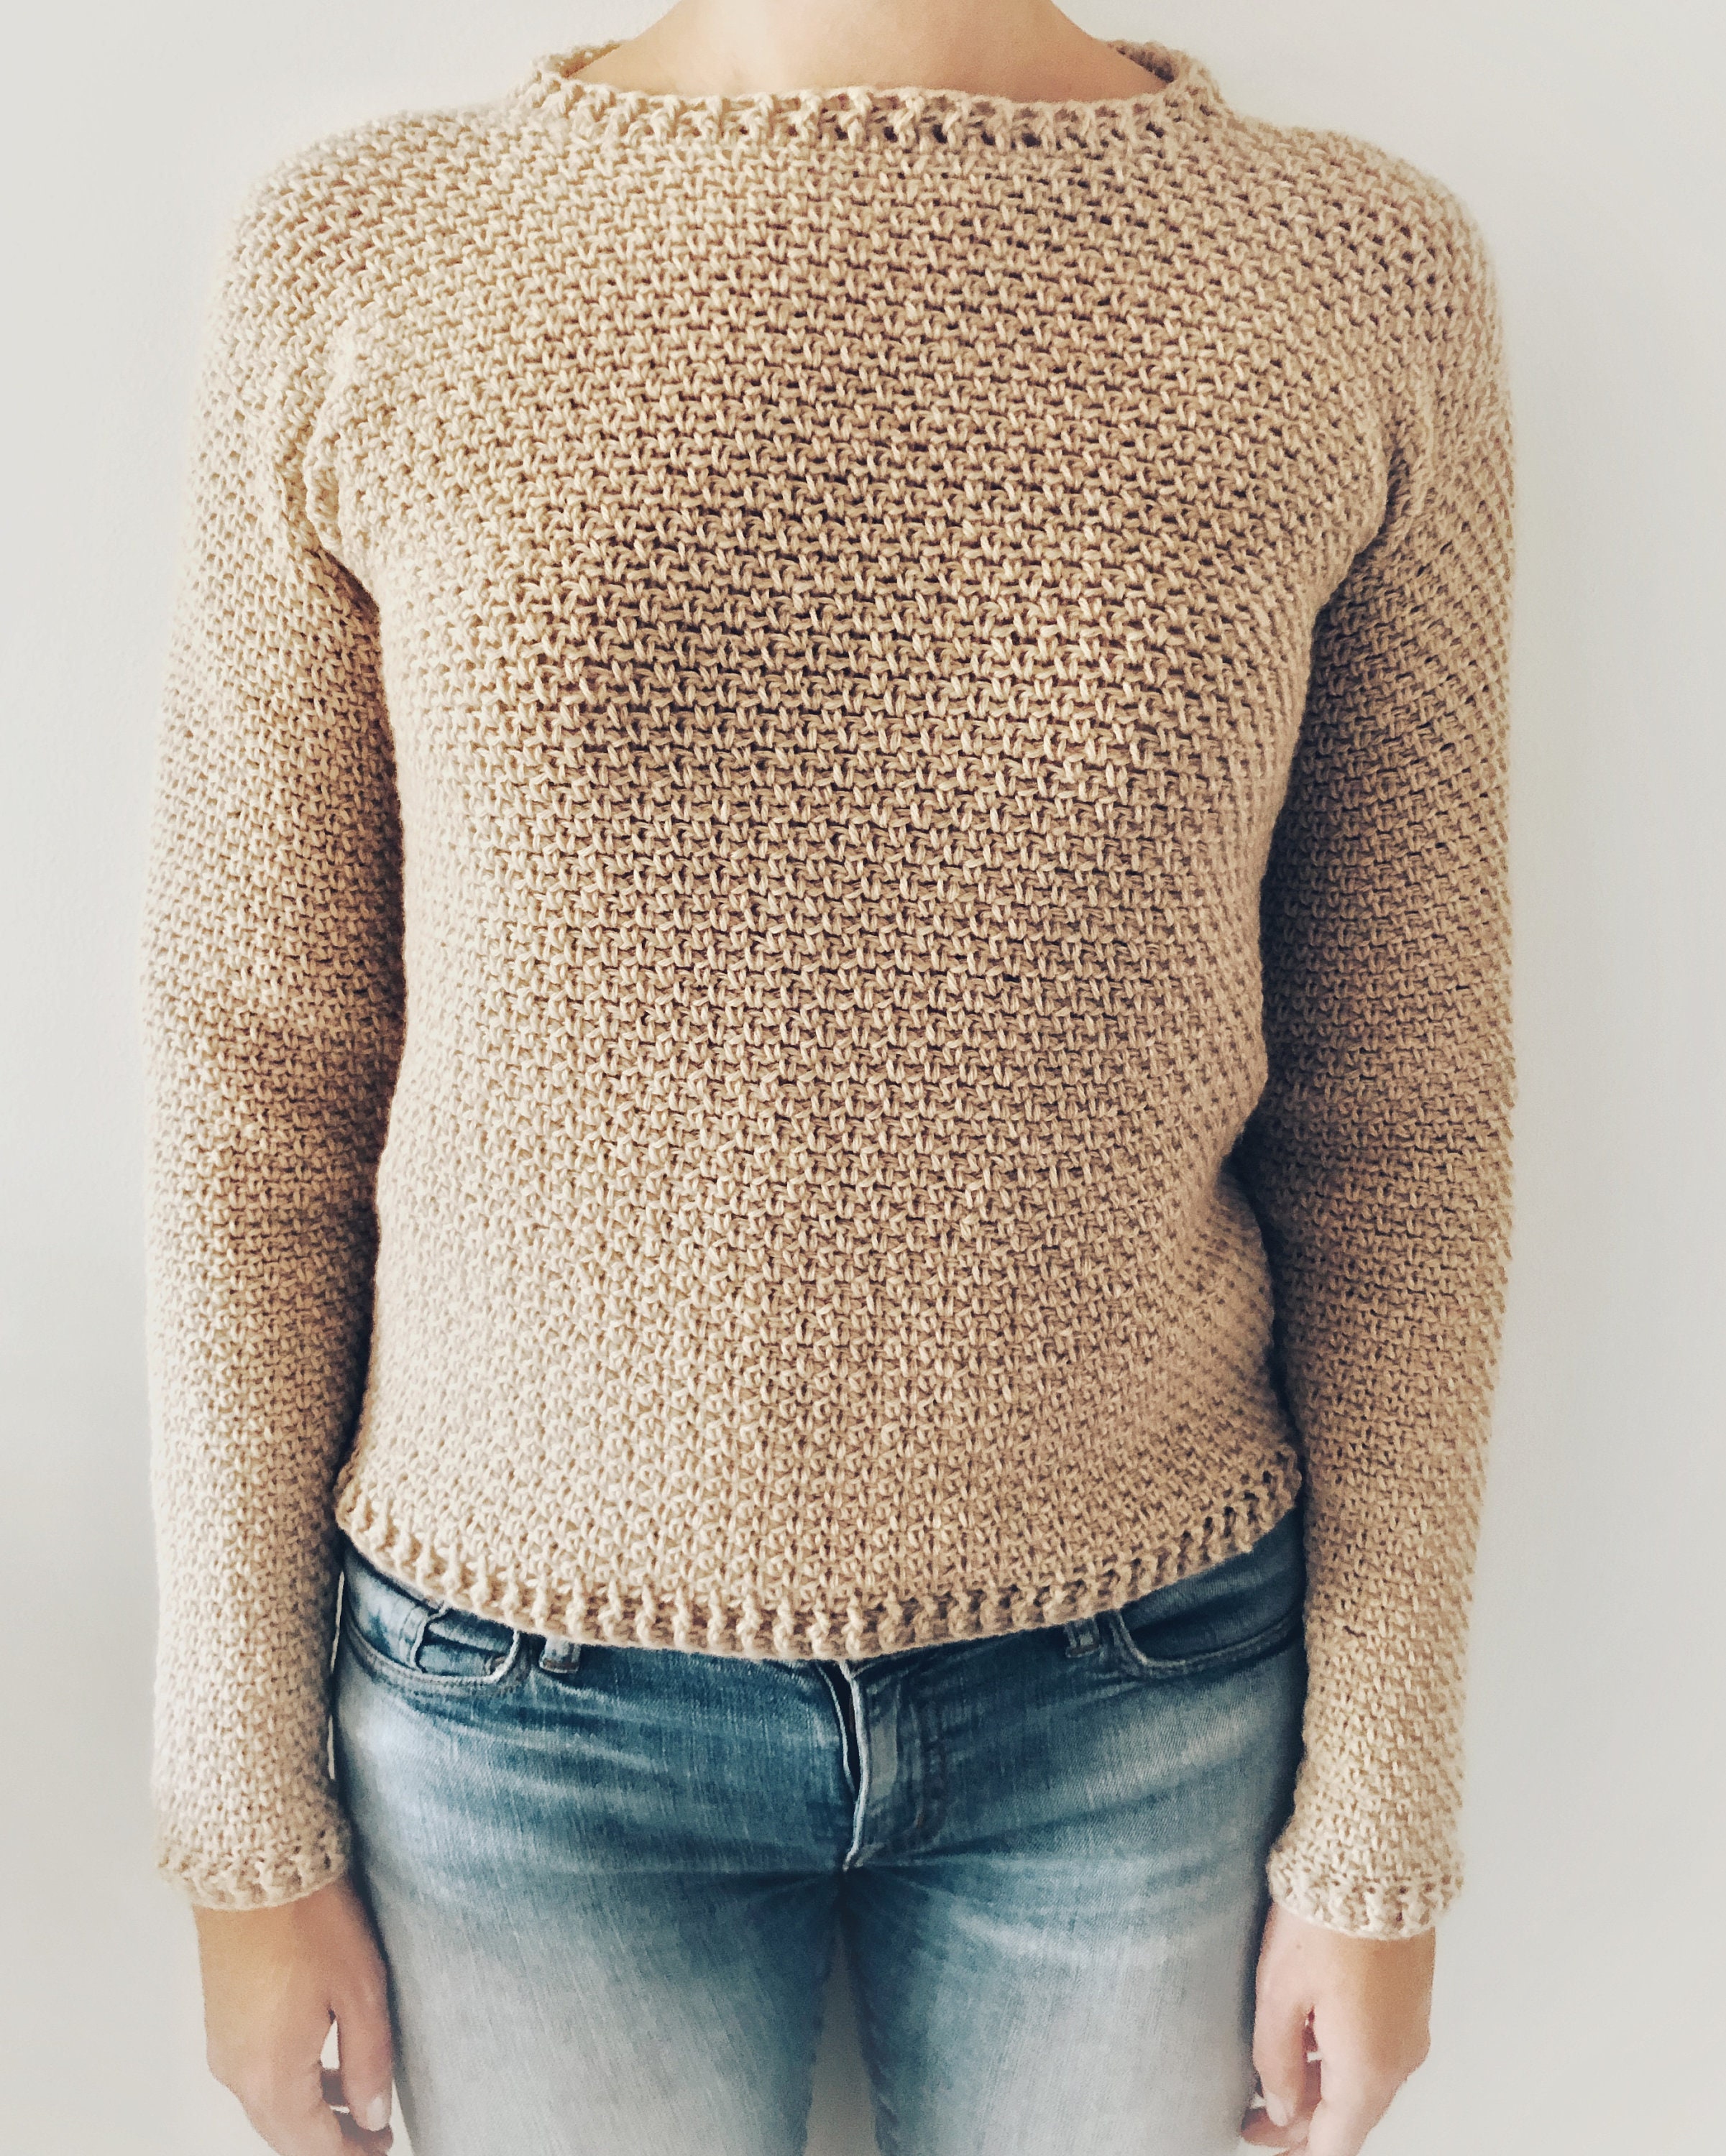 Crochet Sweater Pattern PDF Evening Dust Sweater. Cozy | Etsy